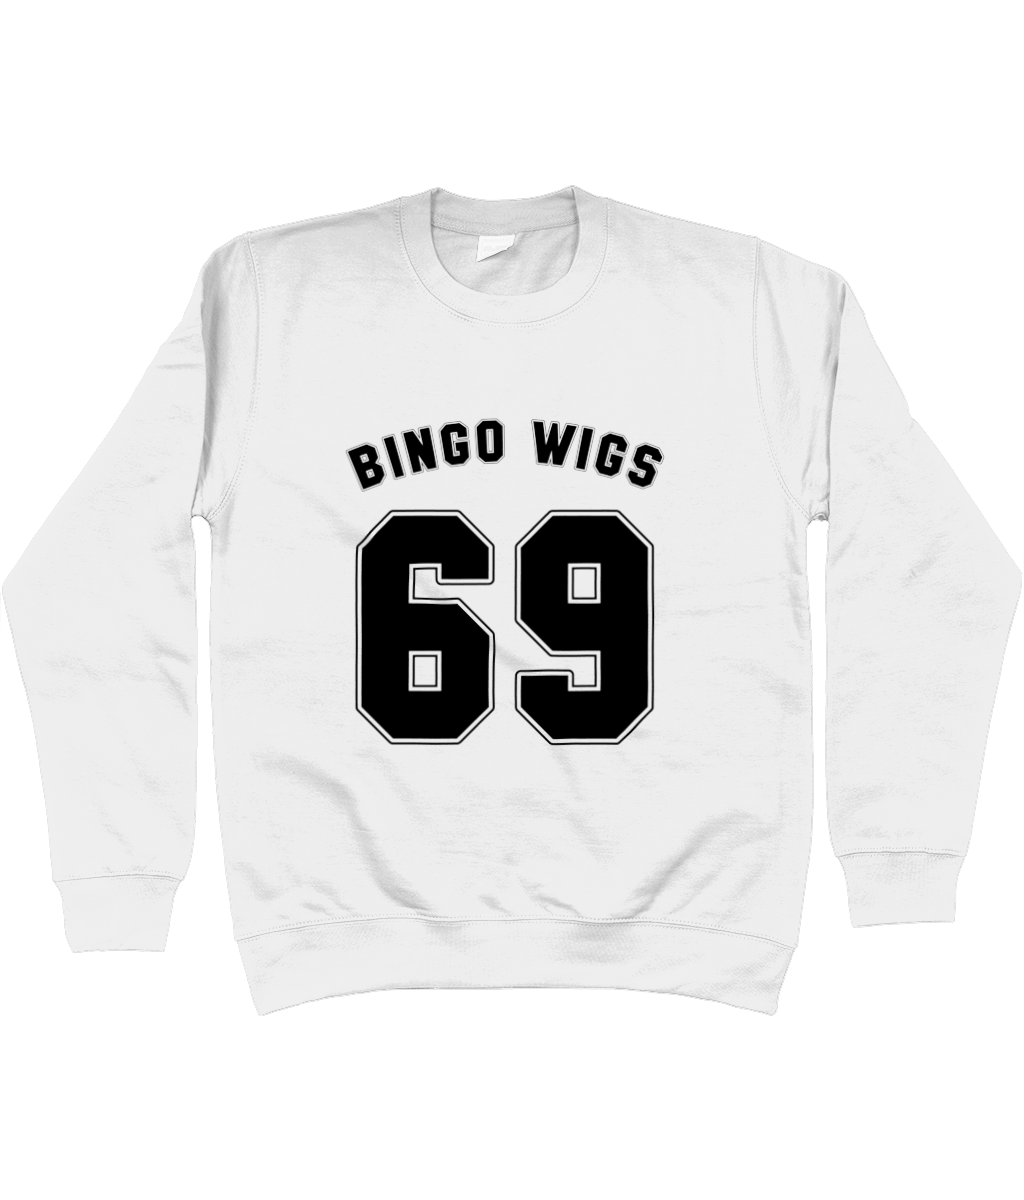 Bingo Wigs 69 White Sweatshirt - SNATCHED MERCH